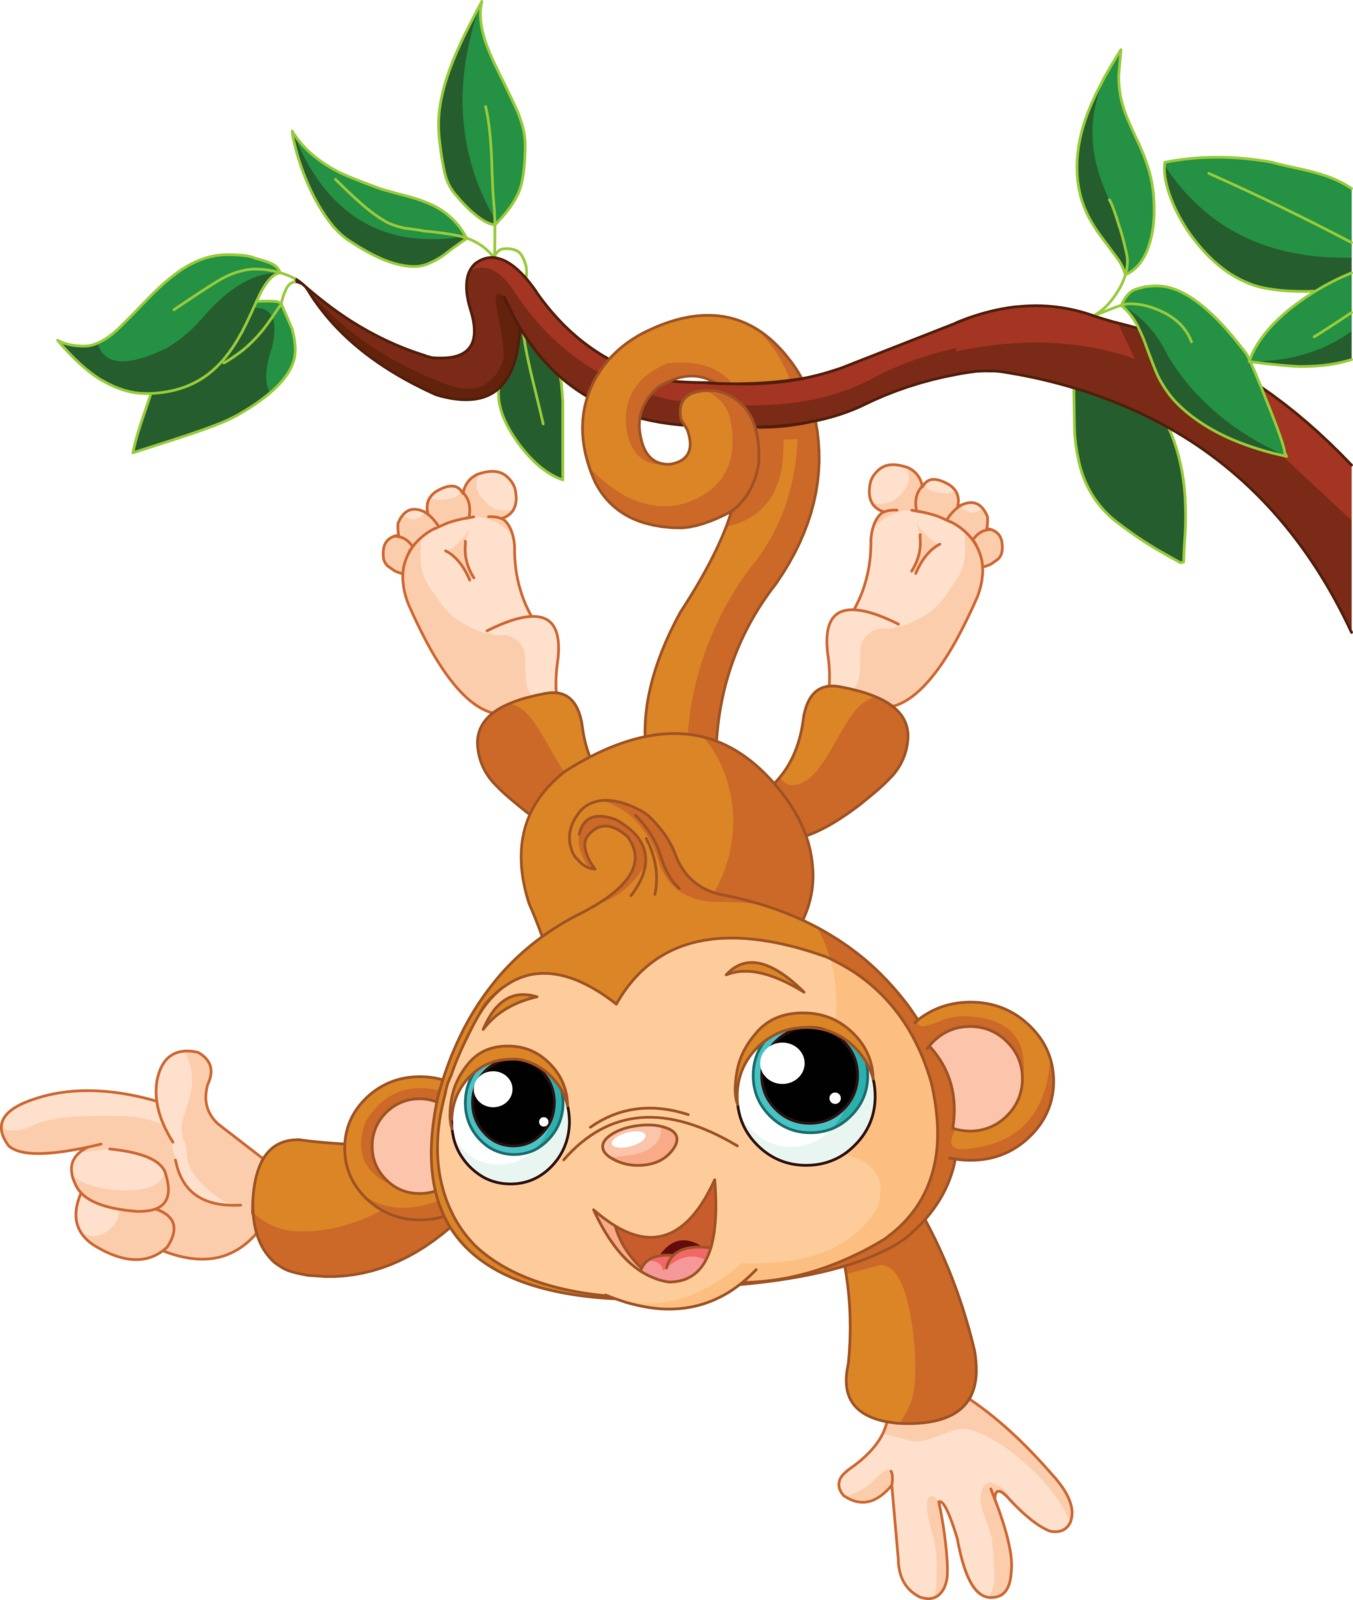 Cute baby monkey is swinging on a tree